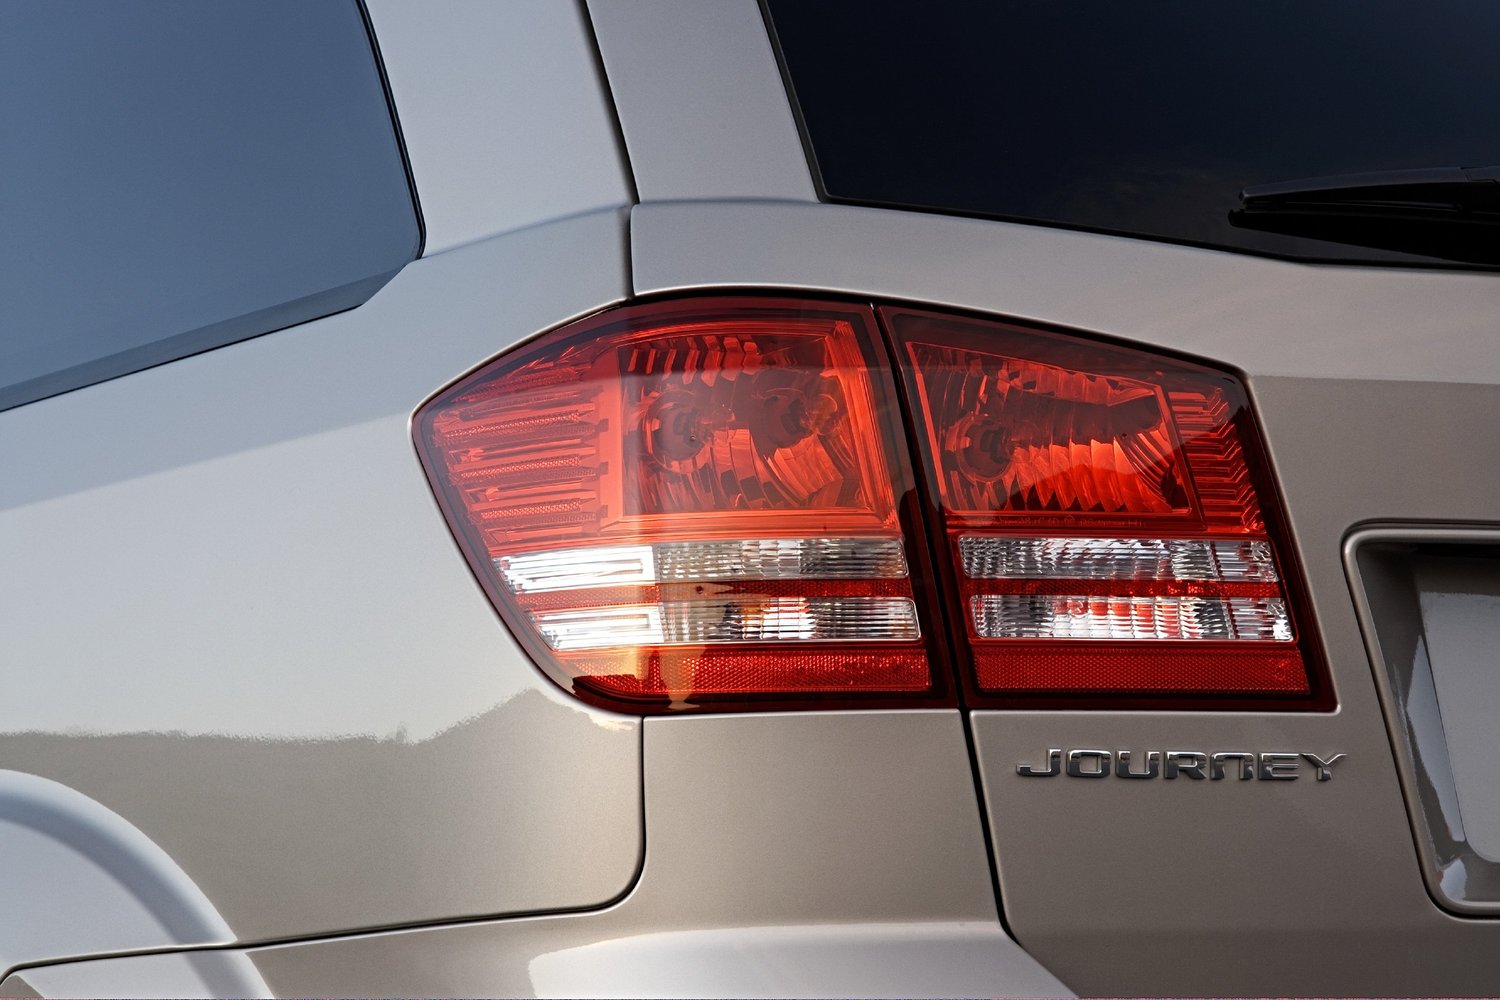 кроссовер Dodge Journey 2008 - 2016г выпуска модификация 2.0 AT (170 л.с.)